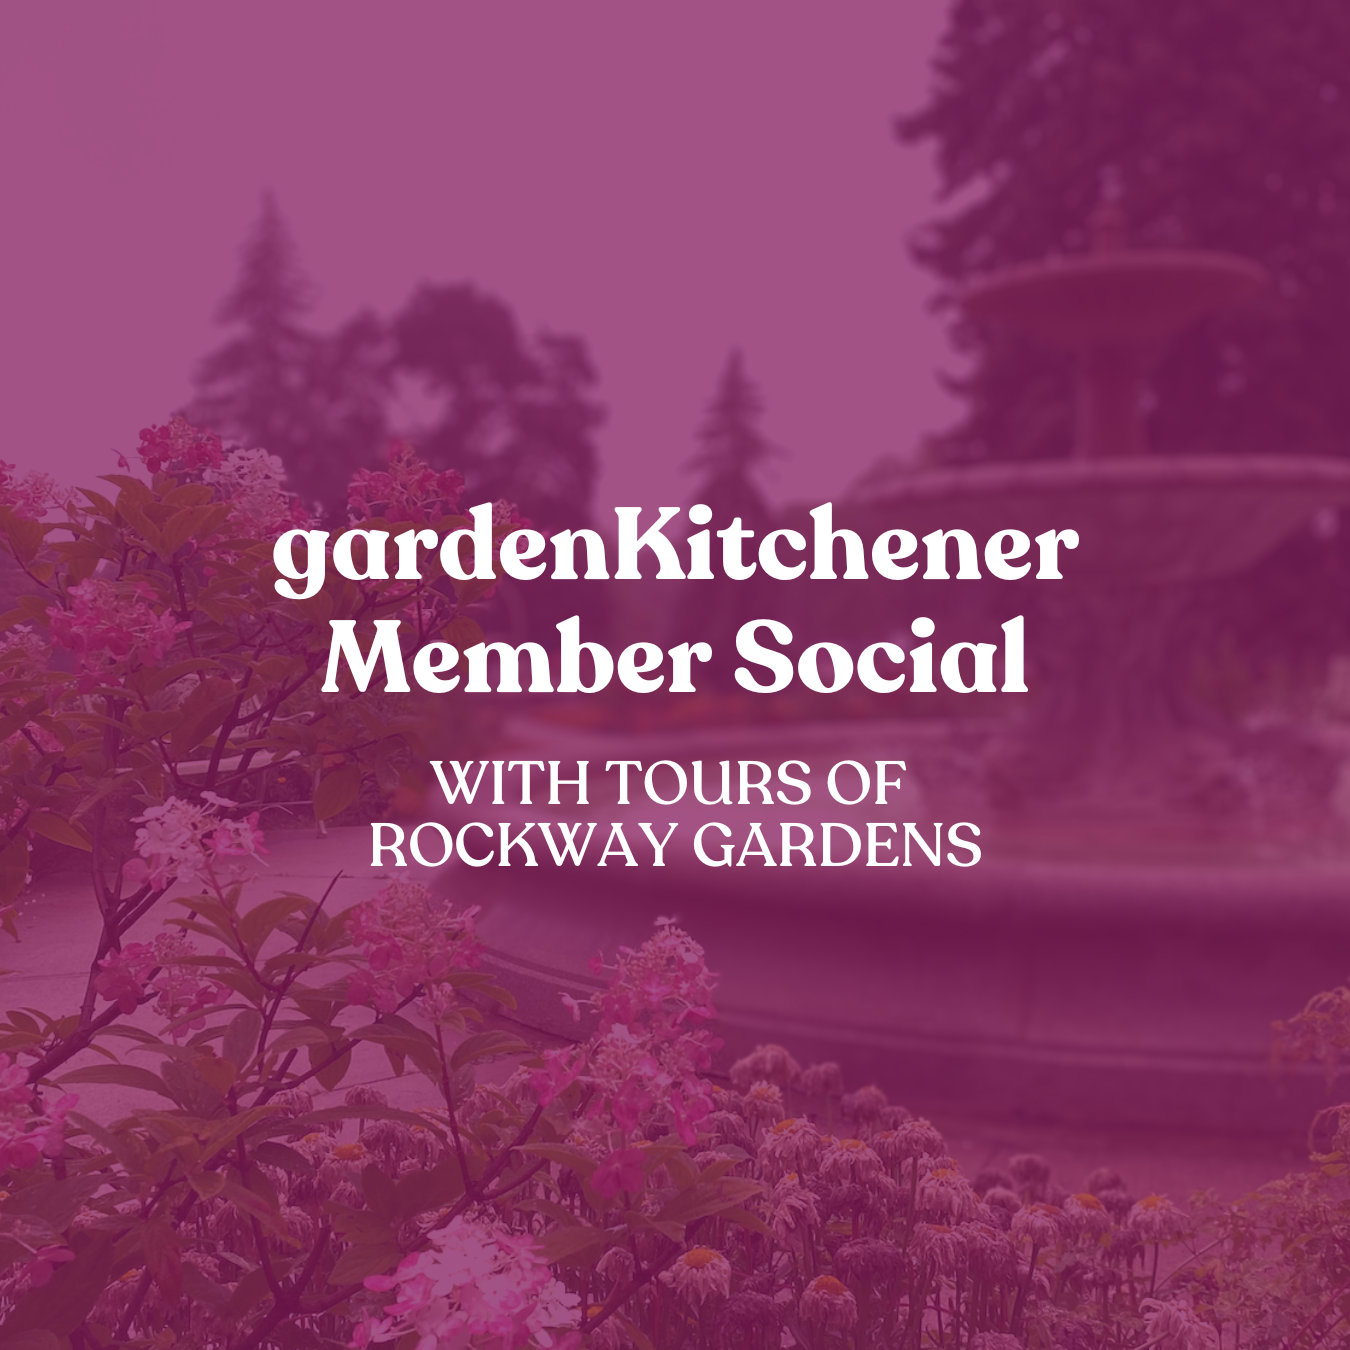 GardenKitchener Member Social with Tours of Rockway Gardens